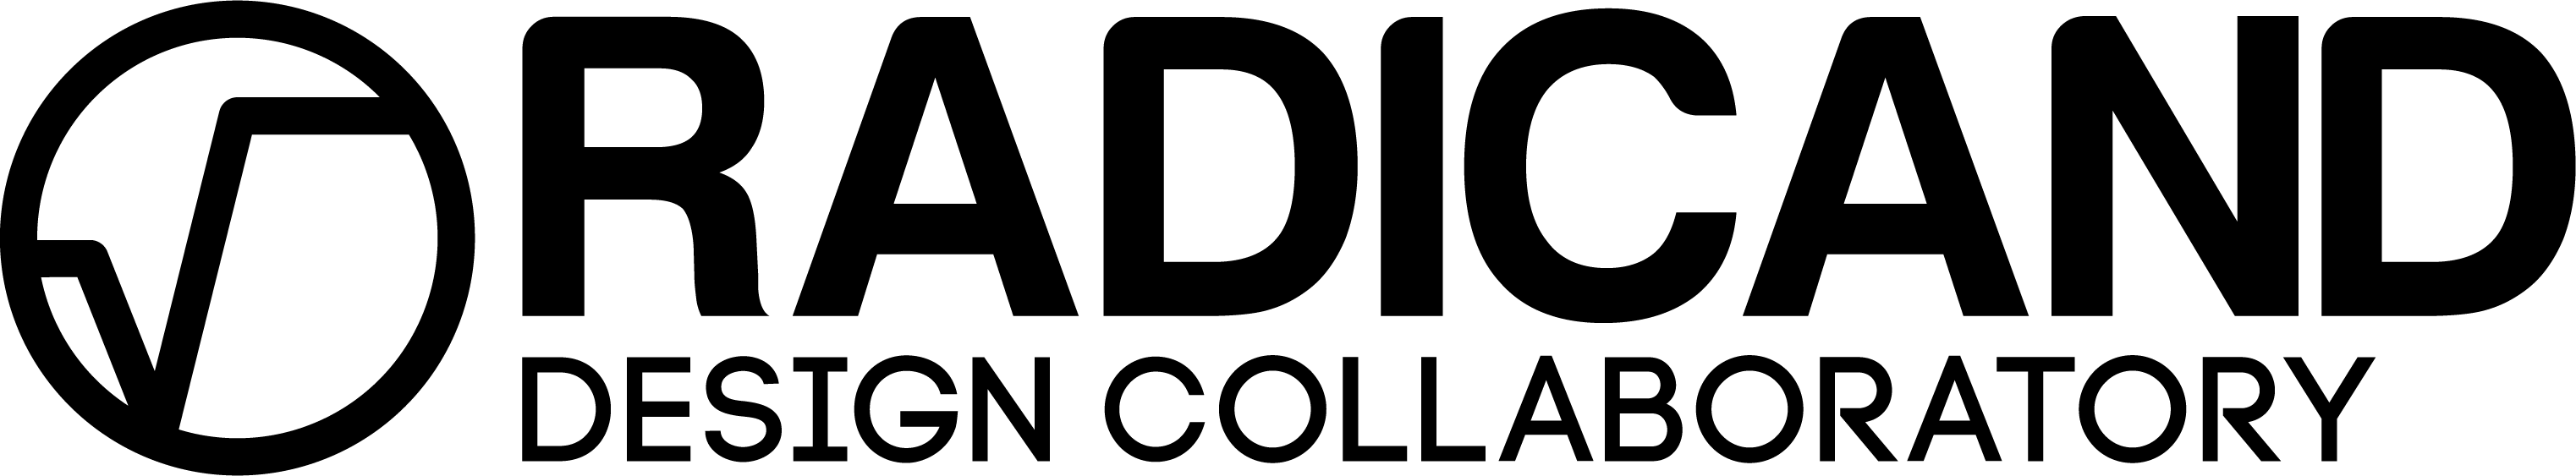 Radicand Logo.png